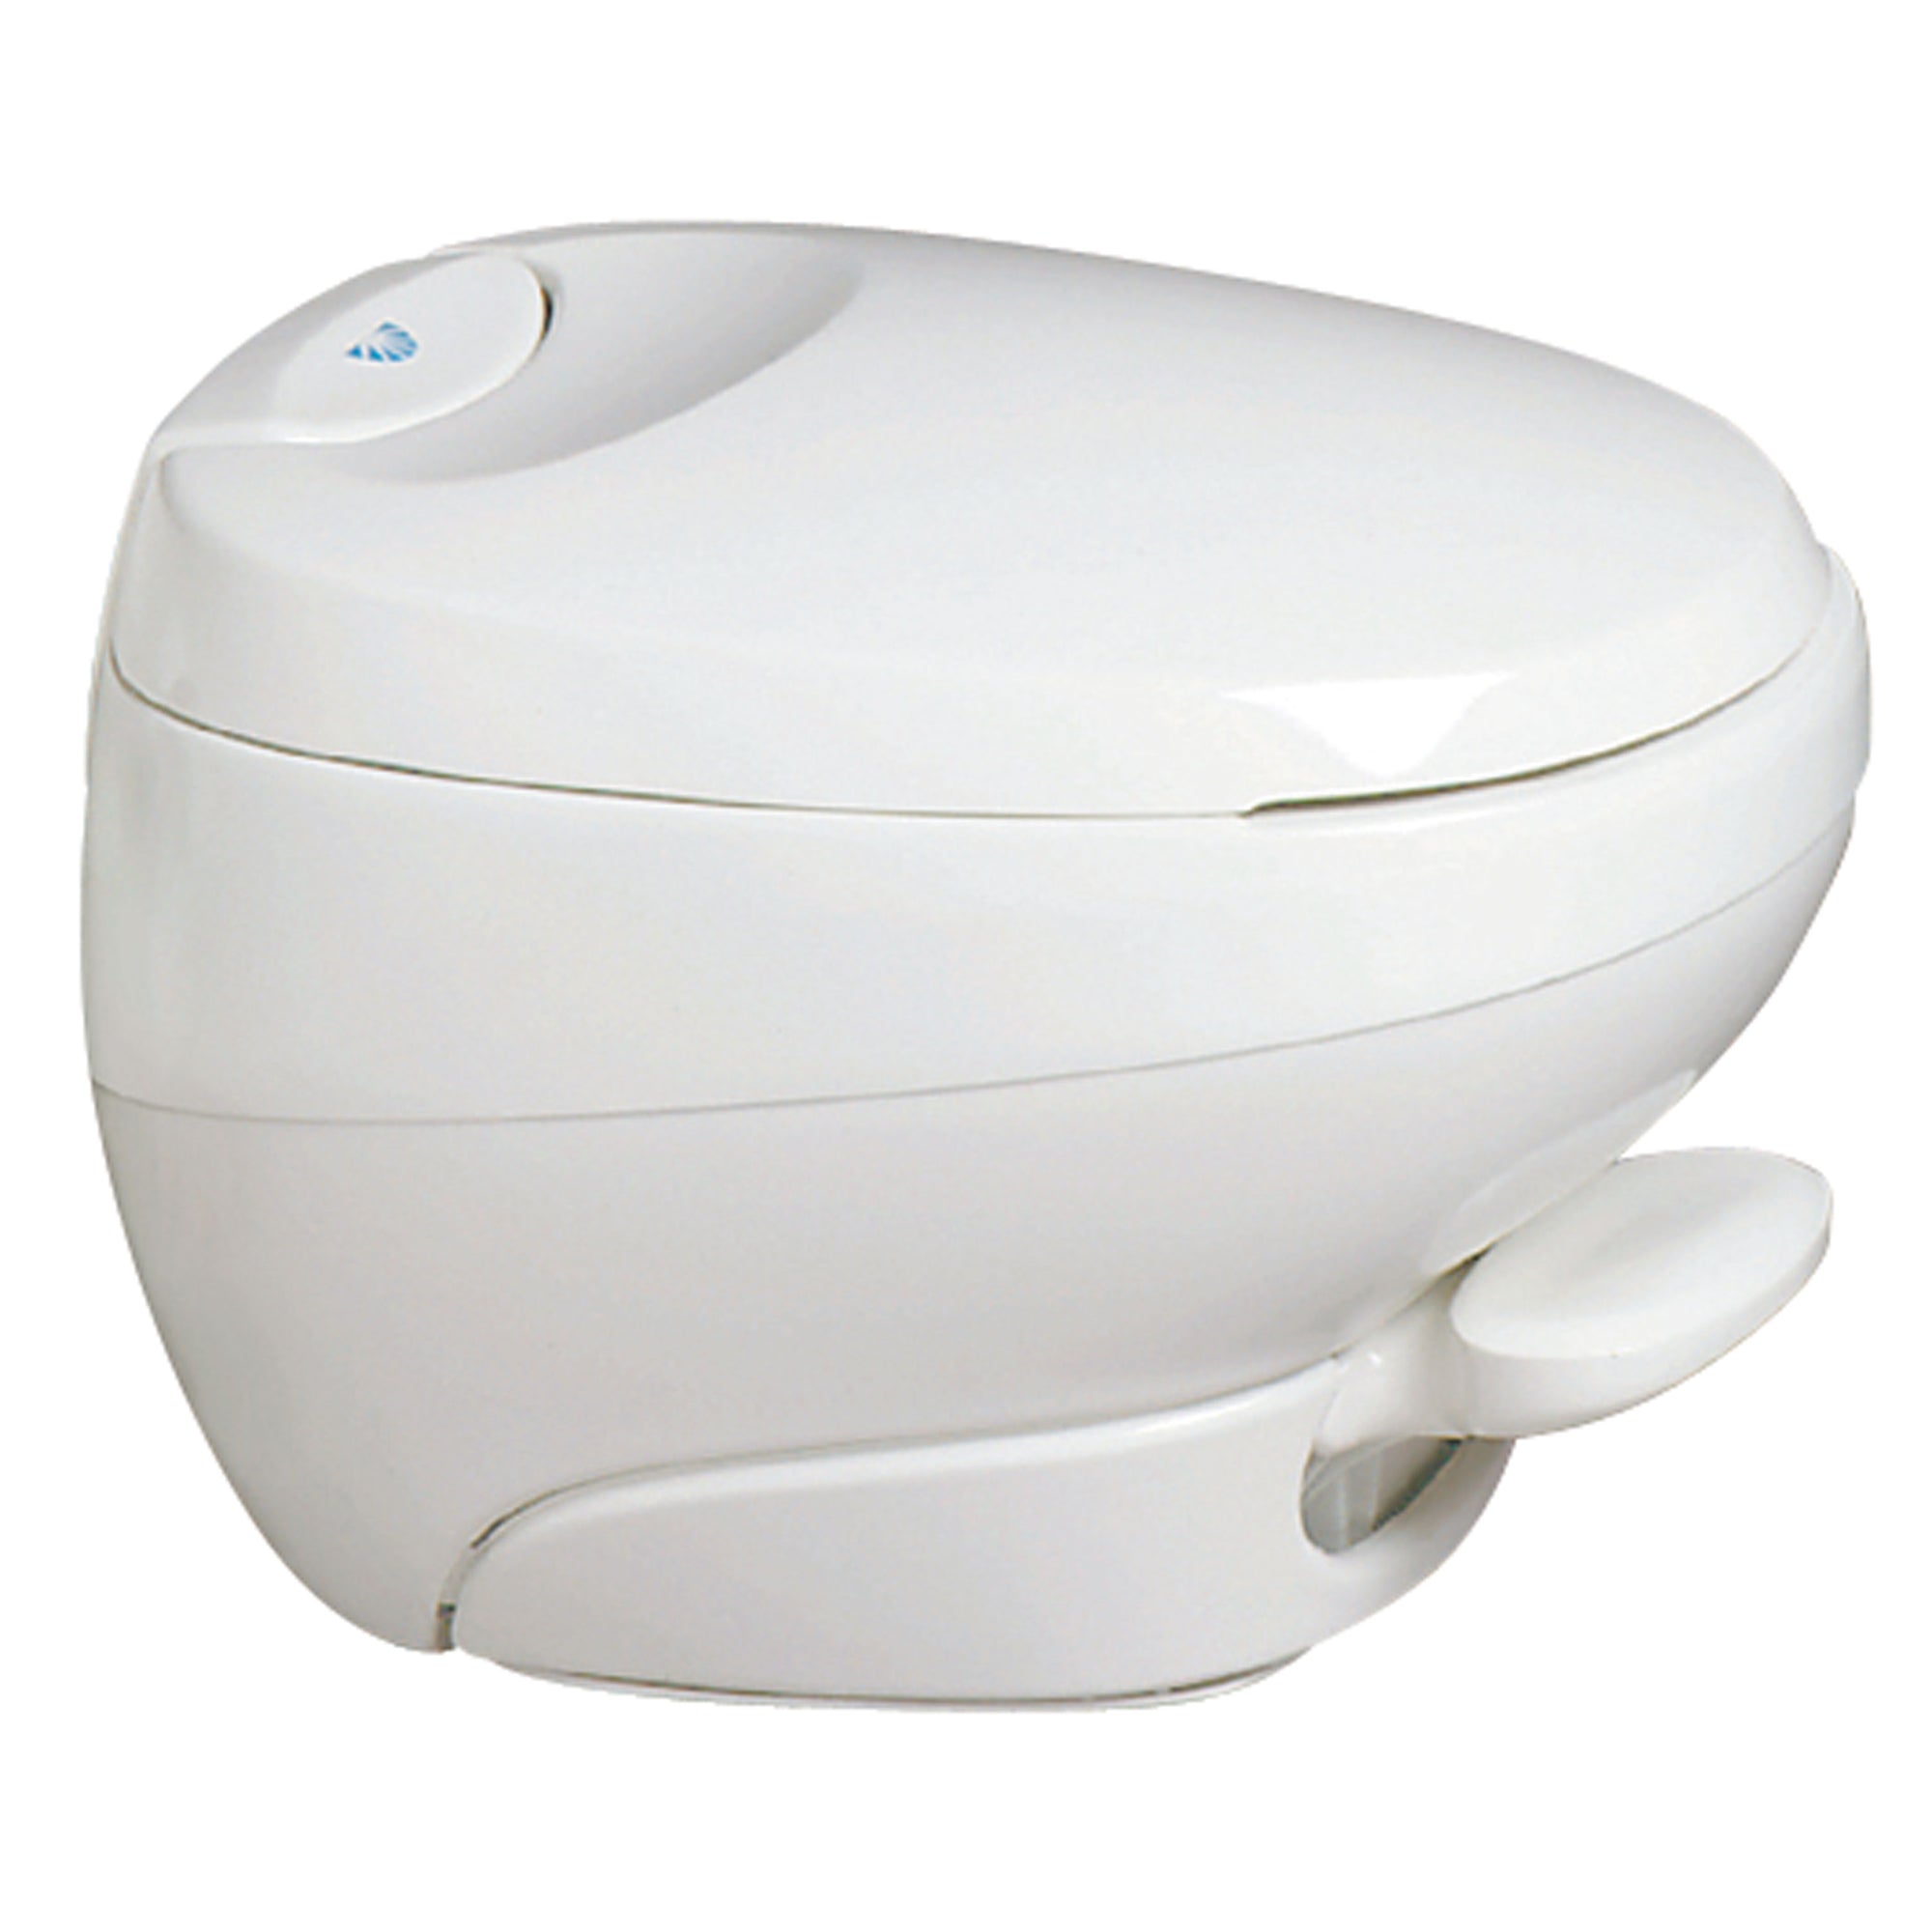 Thetford 31122 Bravura Toilet with Water Saver - Low, White